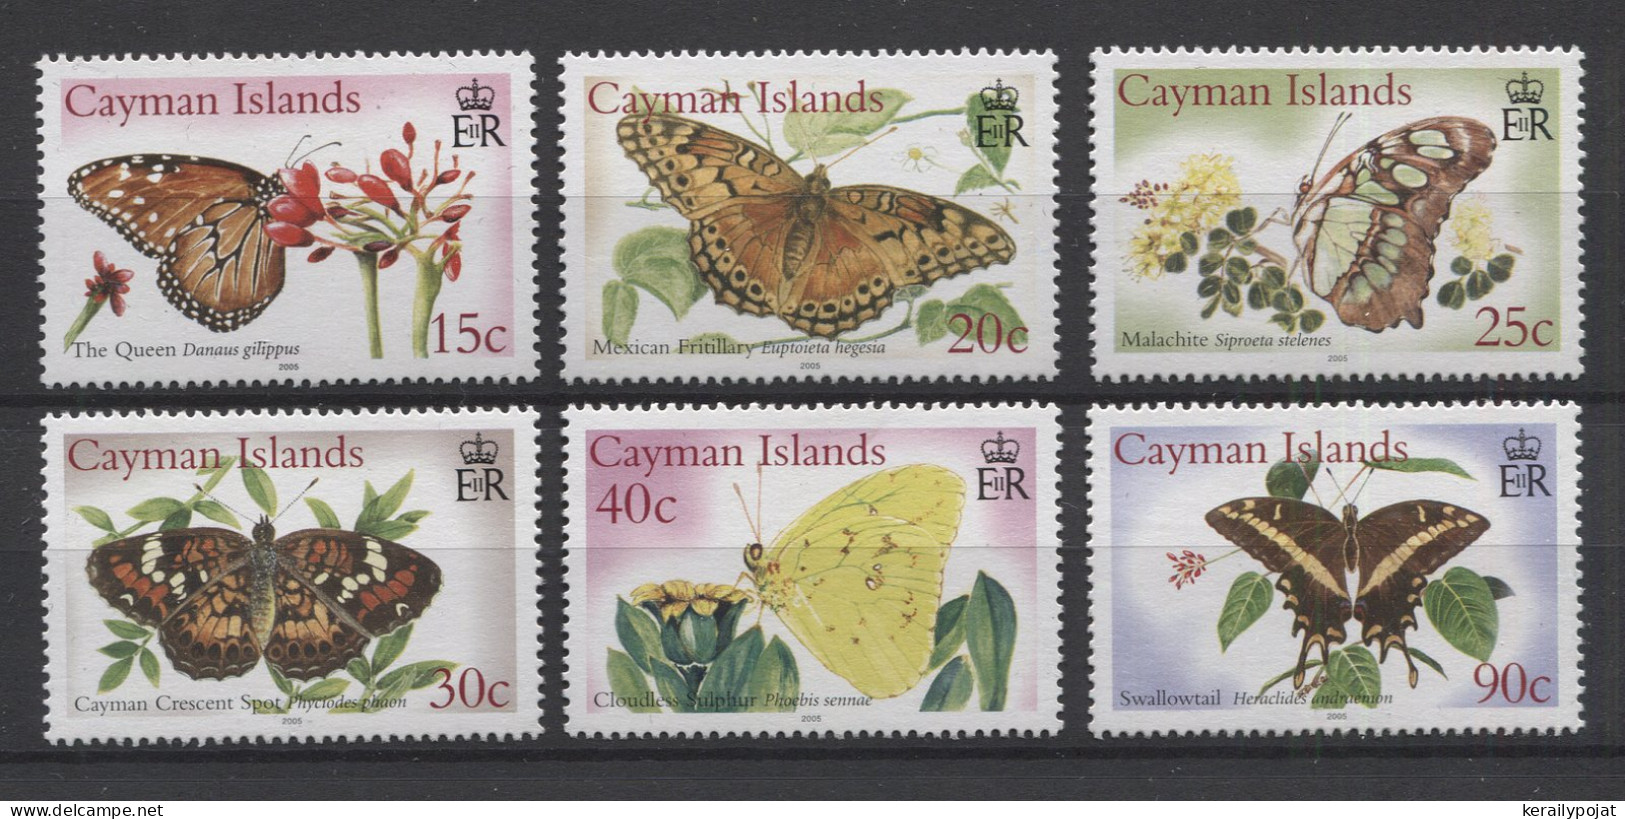 Cayman Islands - 2005 Butterflies MNH__(TH-24826) - Kaimaninseln